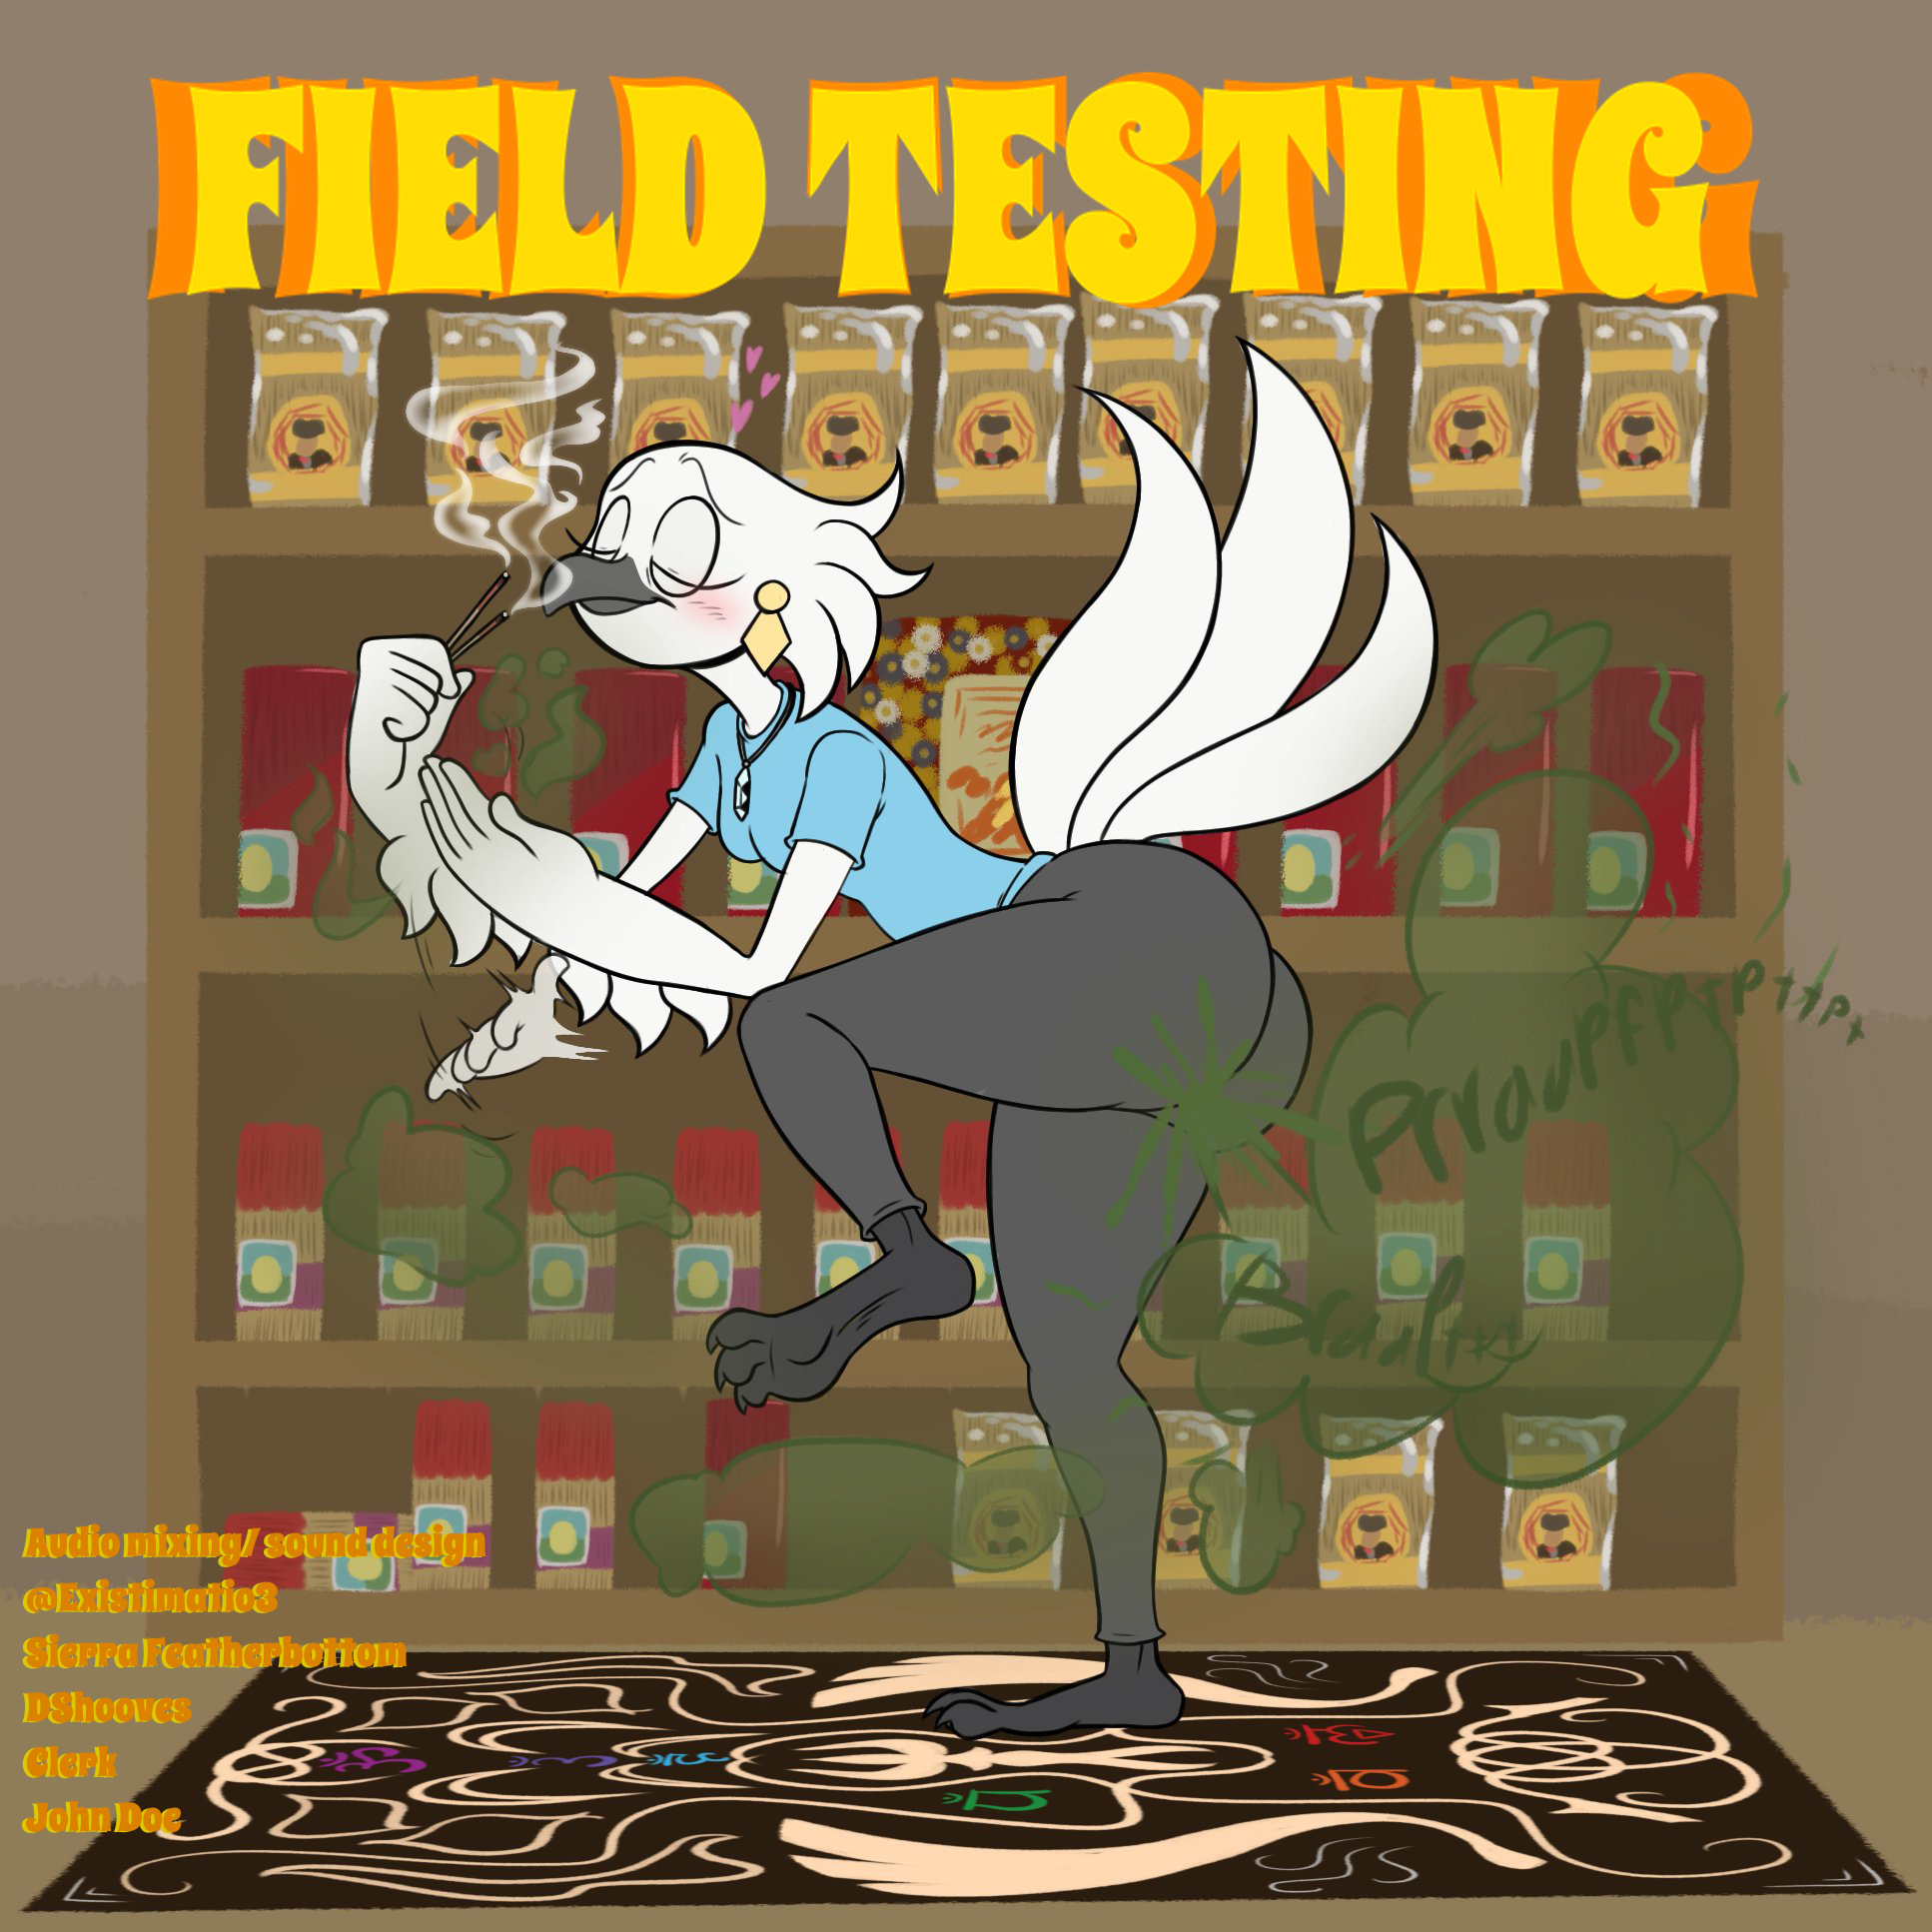 Field Testing